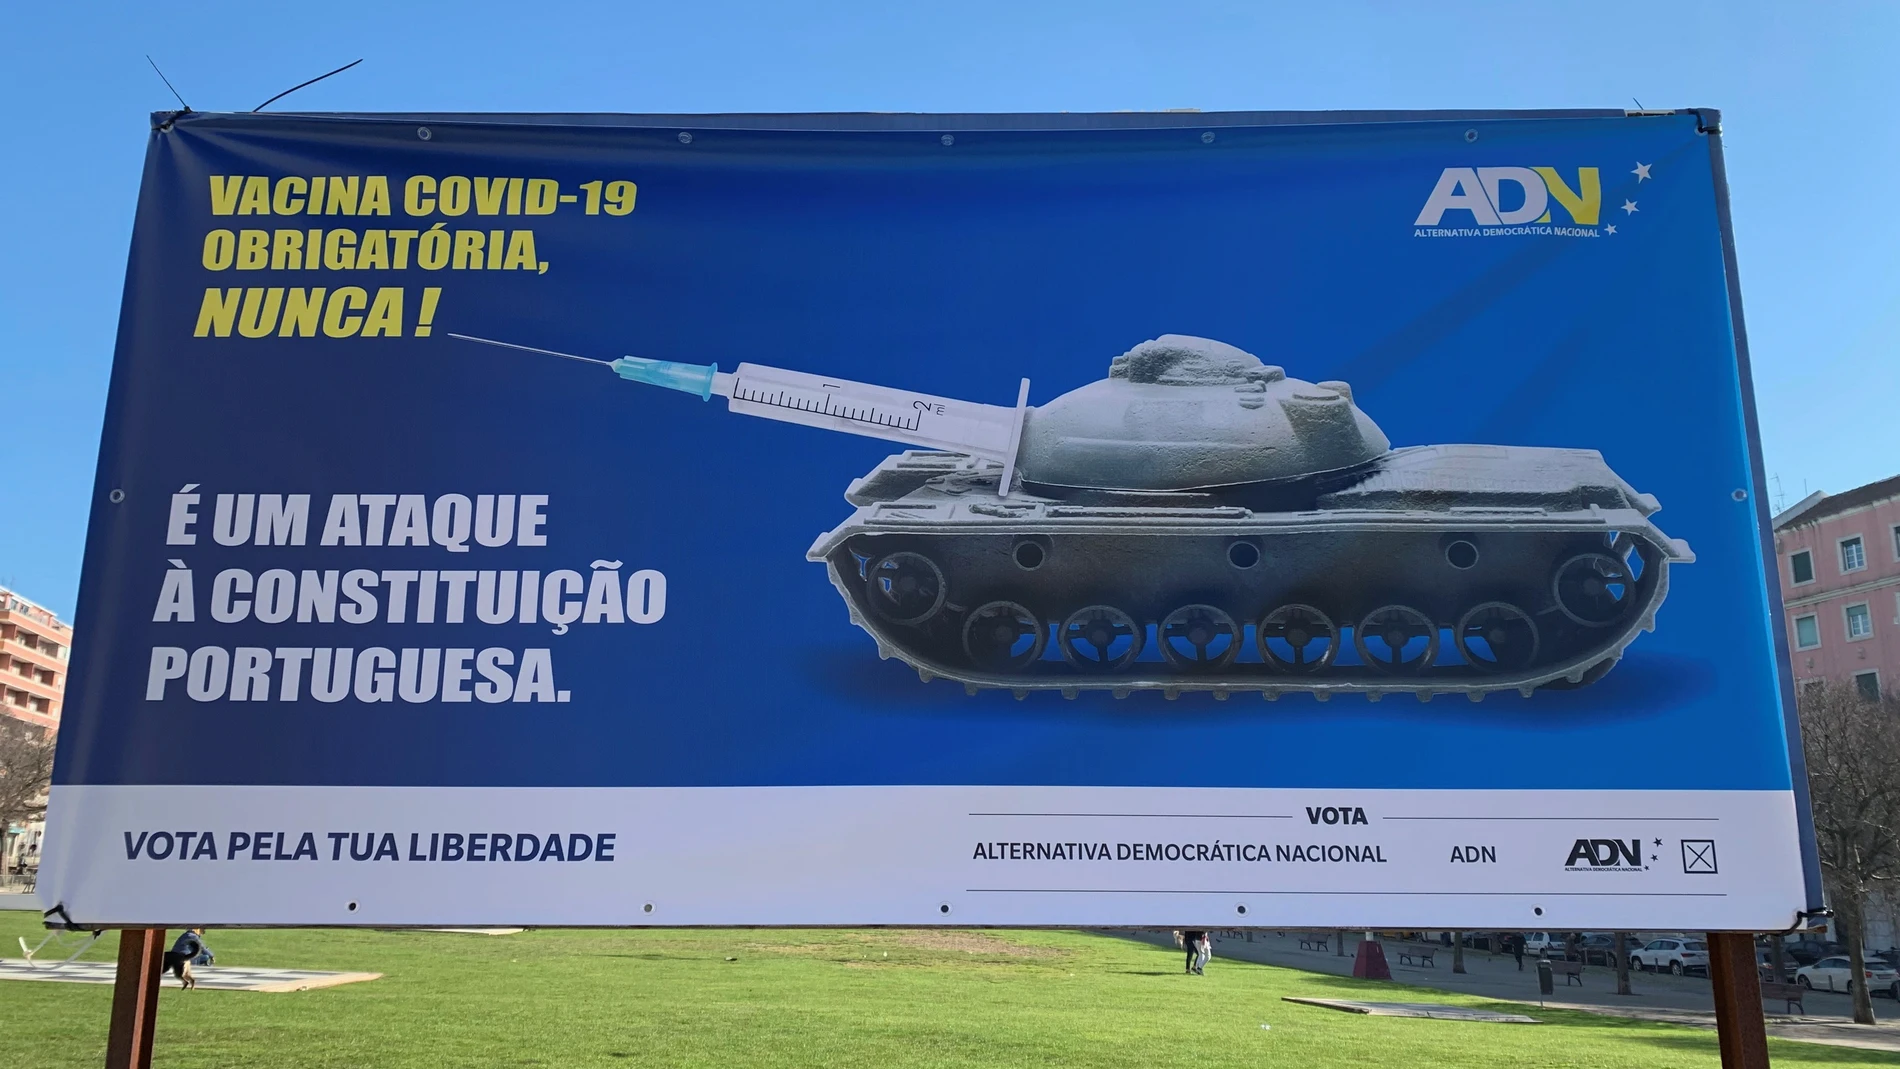 Vista del cartel del partido Alternativa Democrática Nacional (ADN), bajo el lema "Vacuna covid obligatoria ¡nunca!"